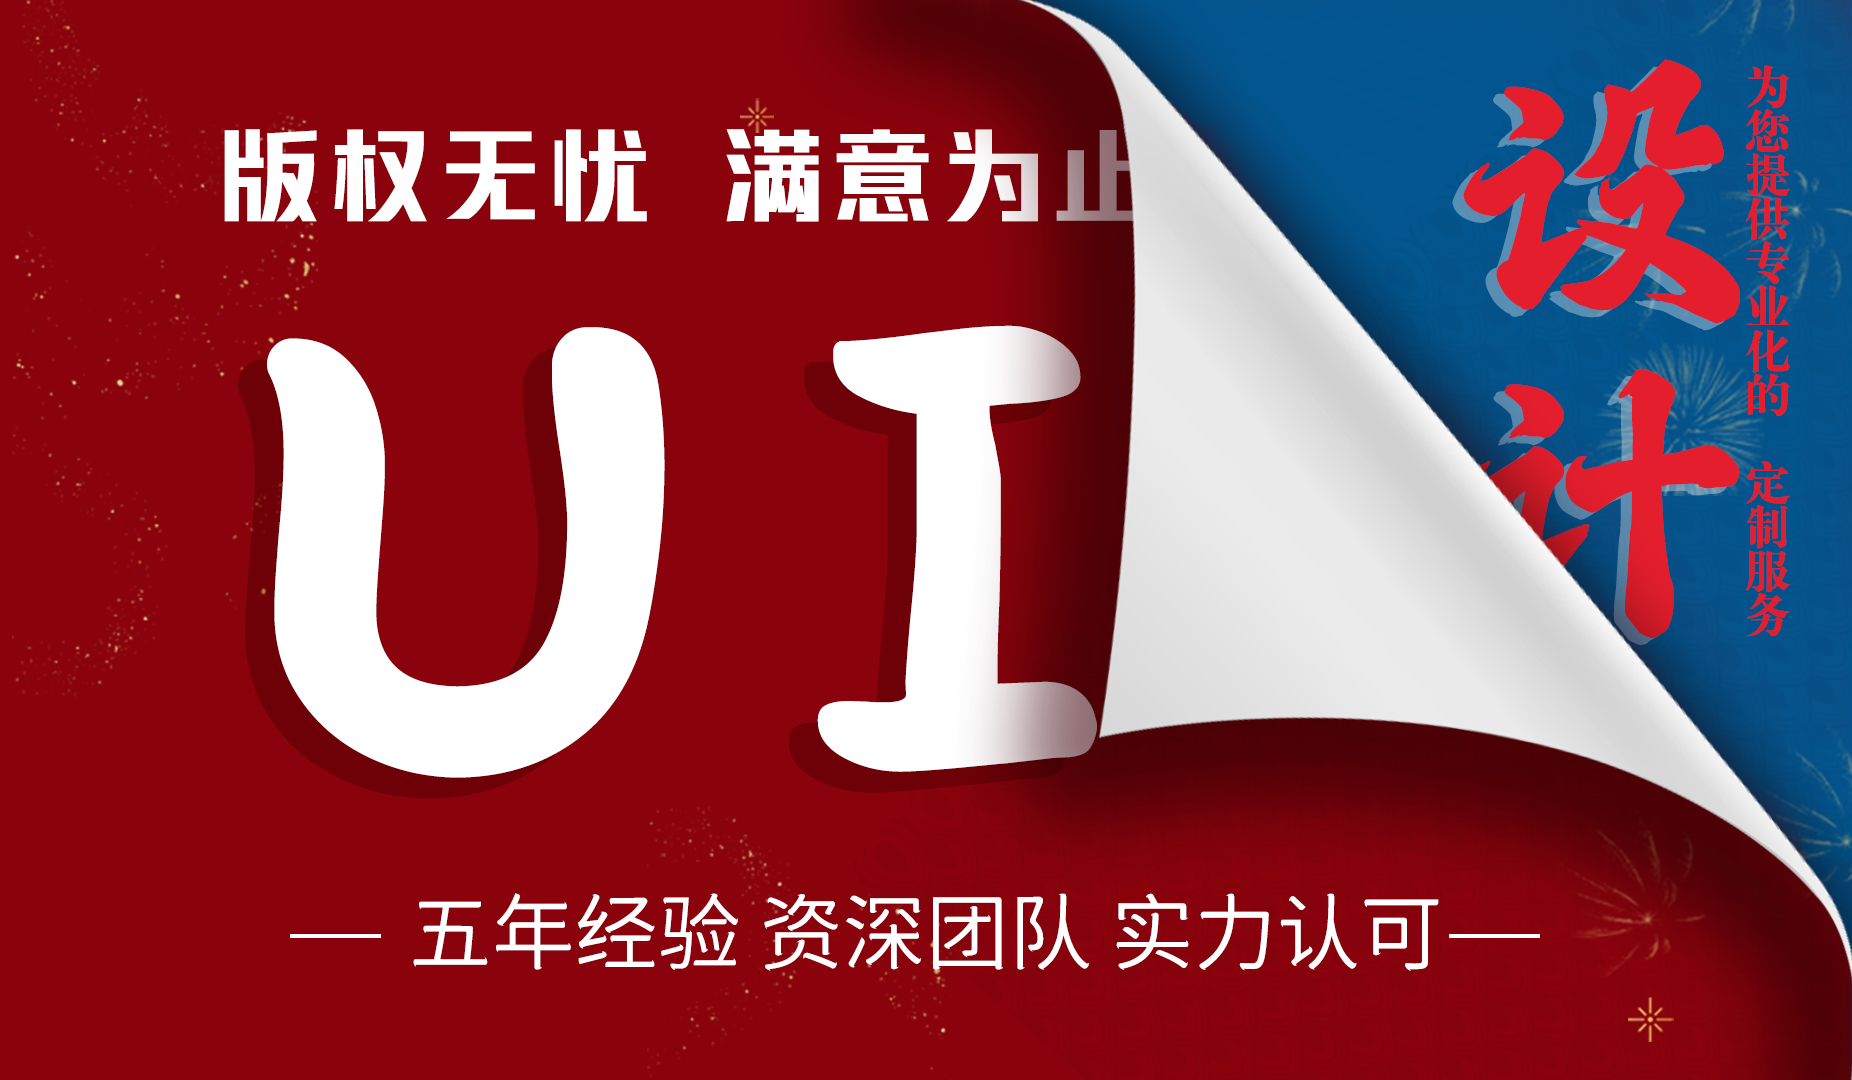 【UI设计】品牌全案设计logo  UI设计公司平面设计